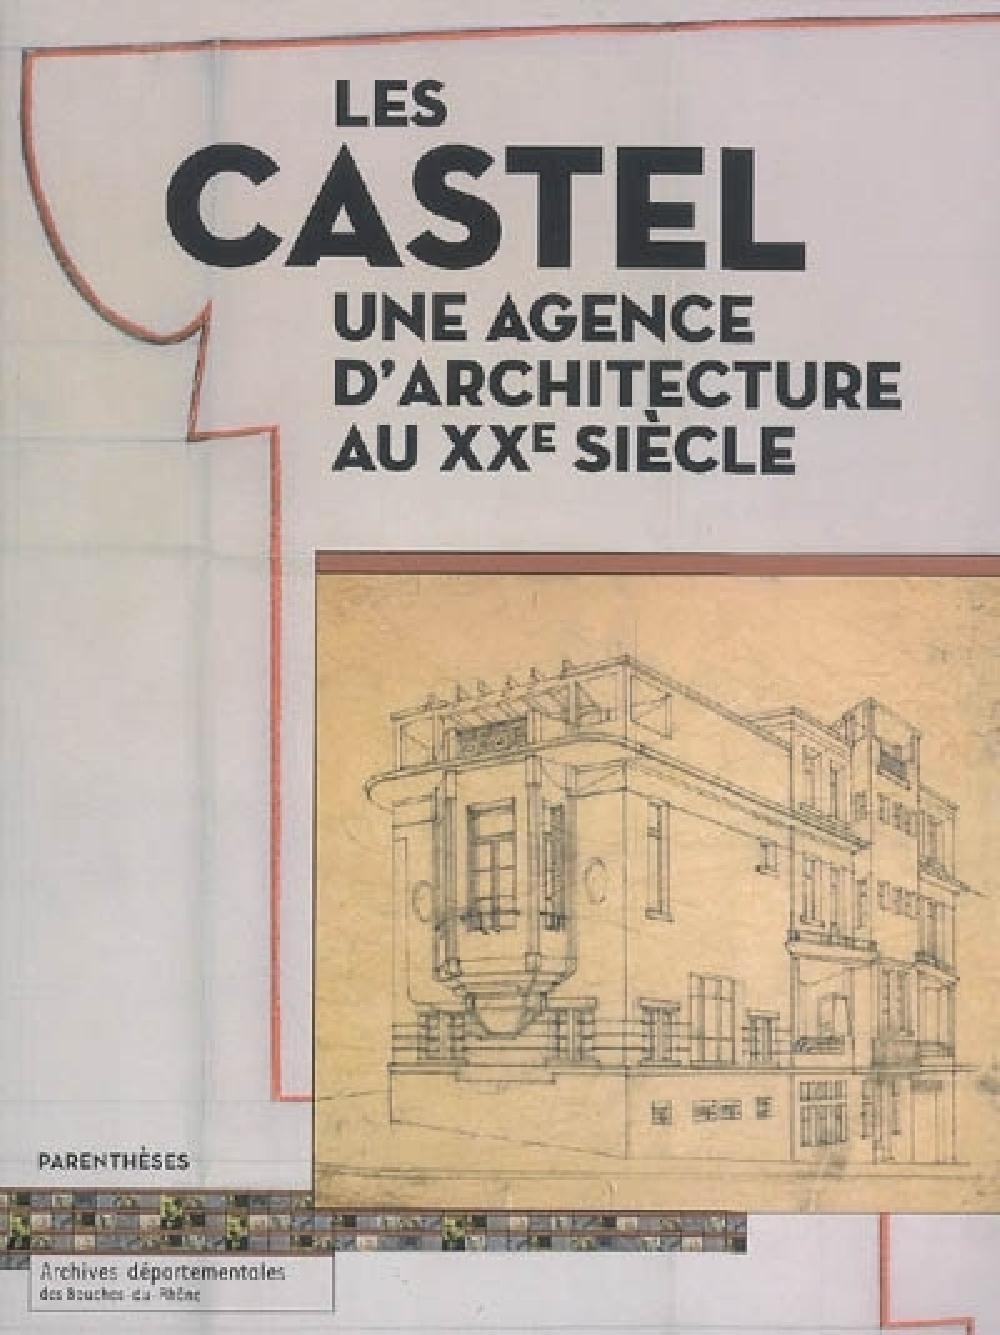 Les Castel une agence d'architecture au XXe sicle